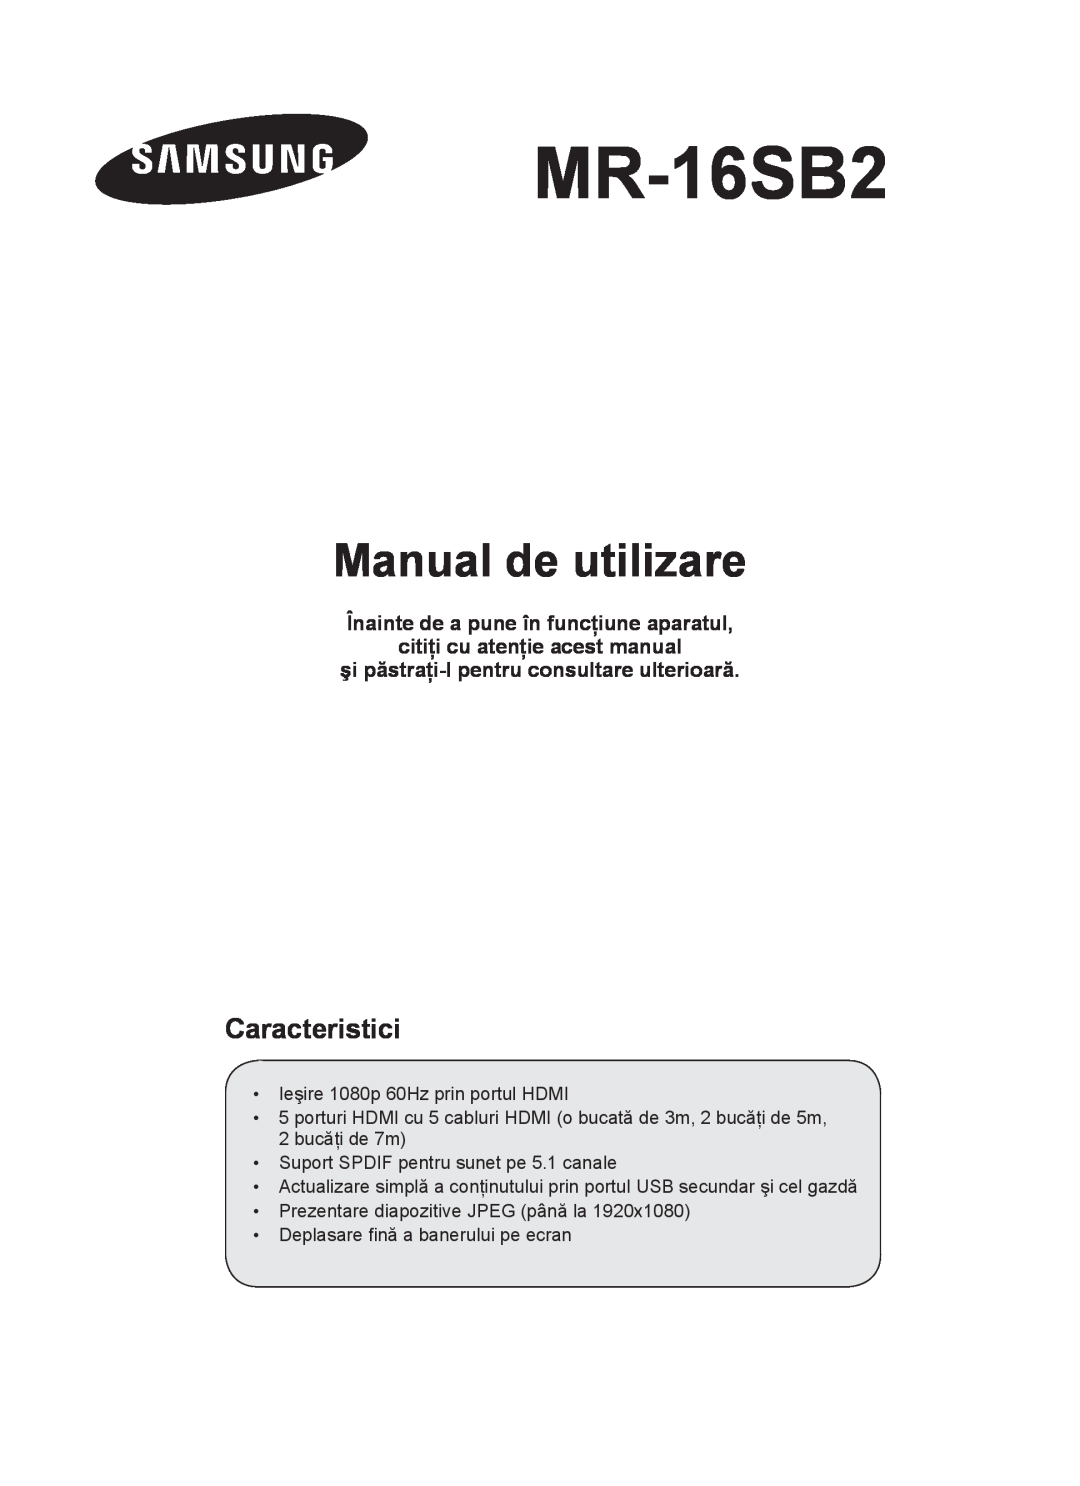 Samsung MR-16SB2 manual Manual de utilizare, Caracteristici, Înainte de a pune în funcţiune aparatul 